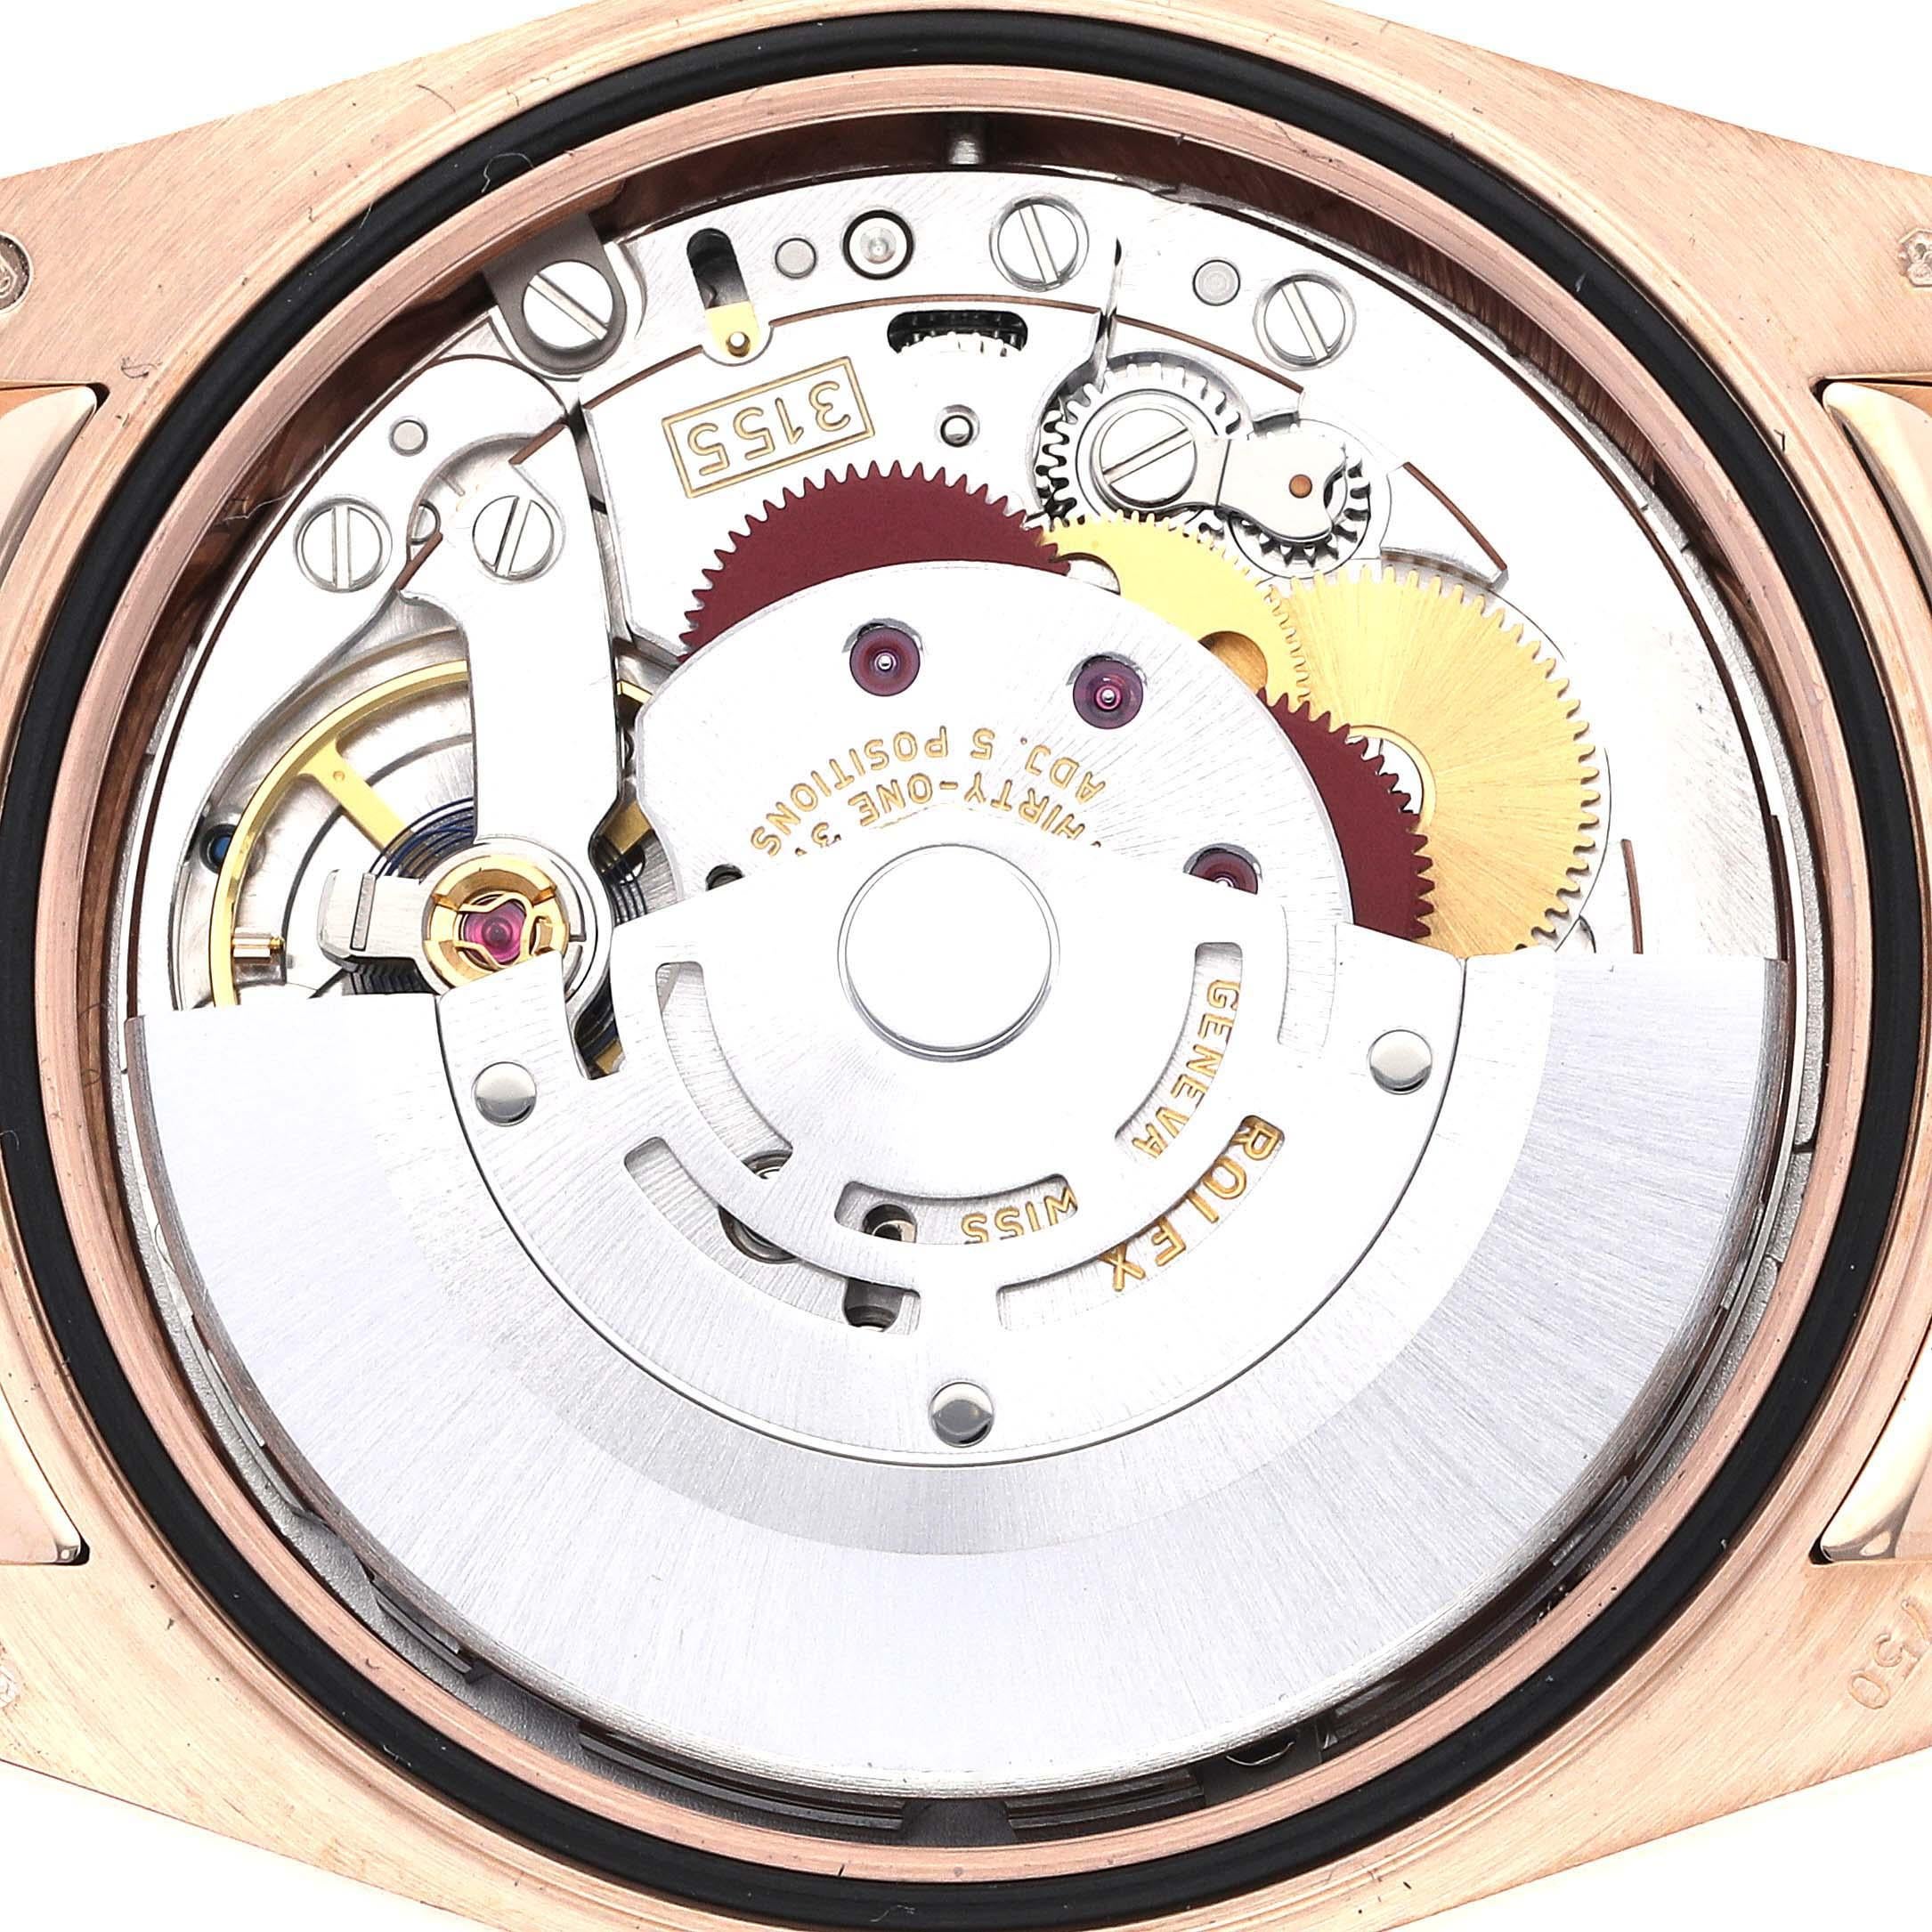 Rolex President Day-Date Rose Gold Chocolate Dial Mens Watch 118135. Mouvement à remontage automatique certifié chronomètre. Boîtier en or rose 18 carats d'un diamètre de 36,0 mm. Logo Rolex sur la couronne. Lunette cannelée en or rose 18 carats.